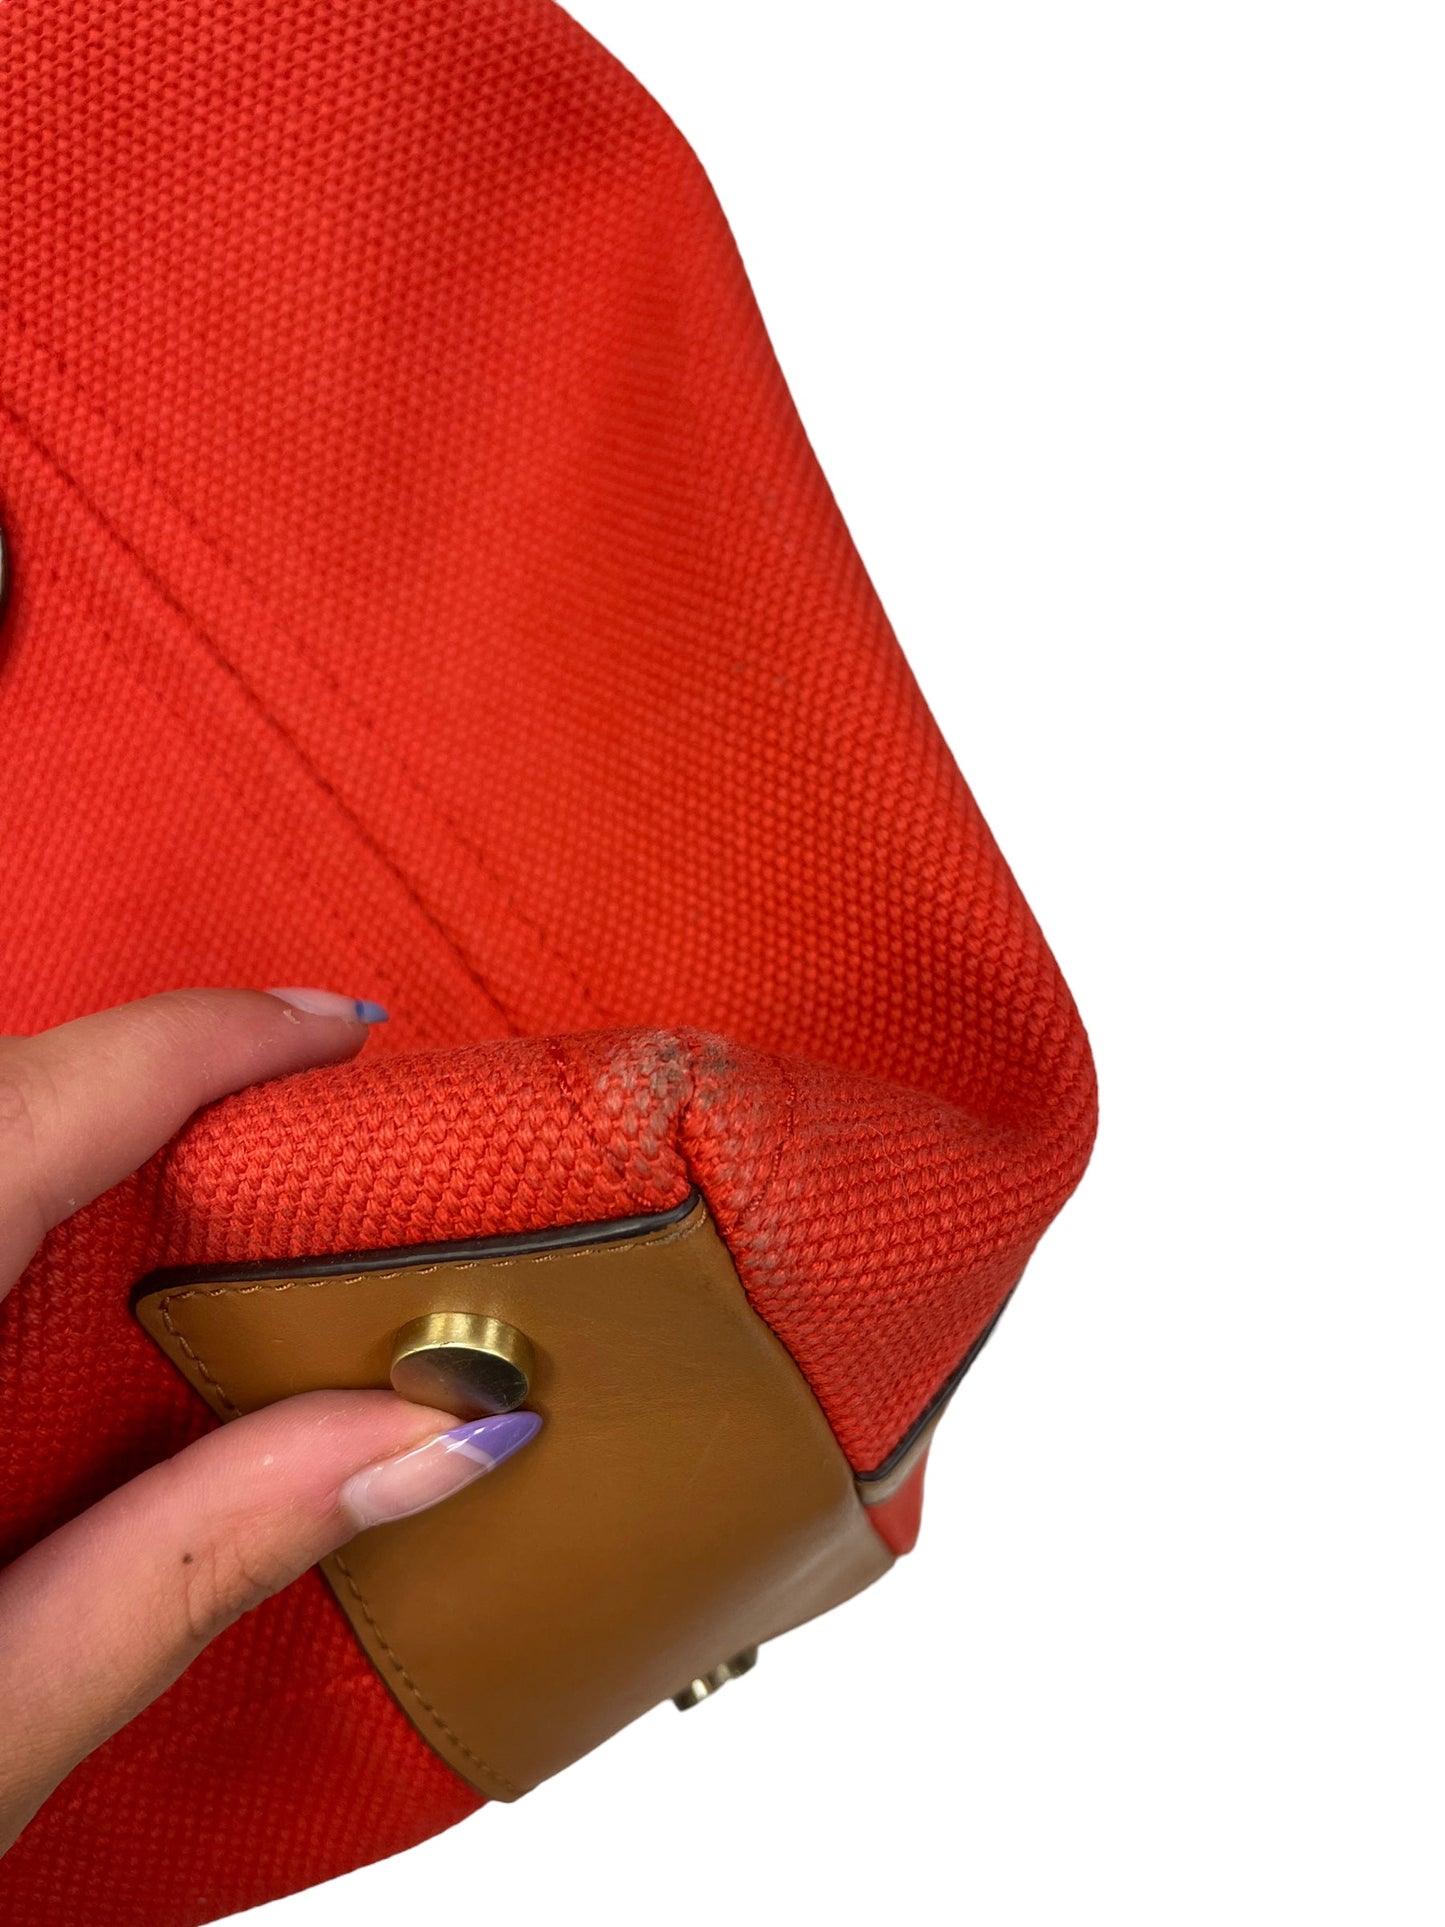 Handbag Designer By Michael Kors Size: Large